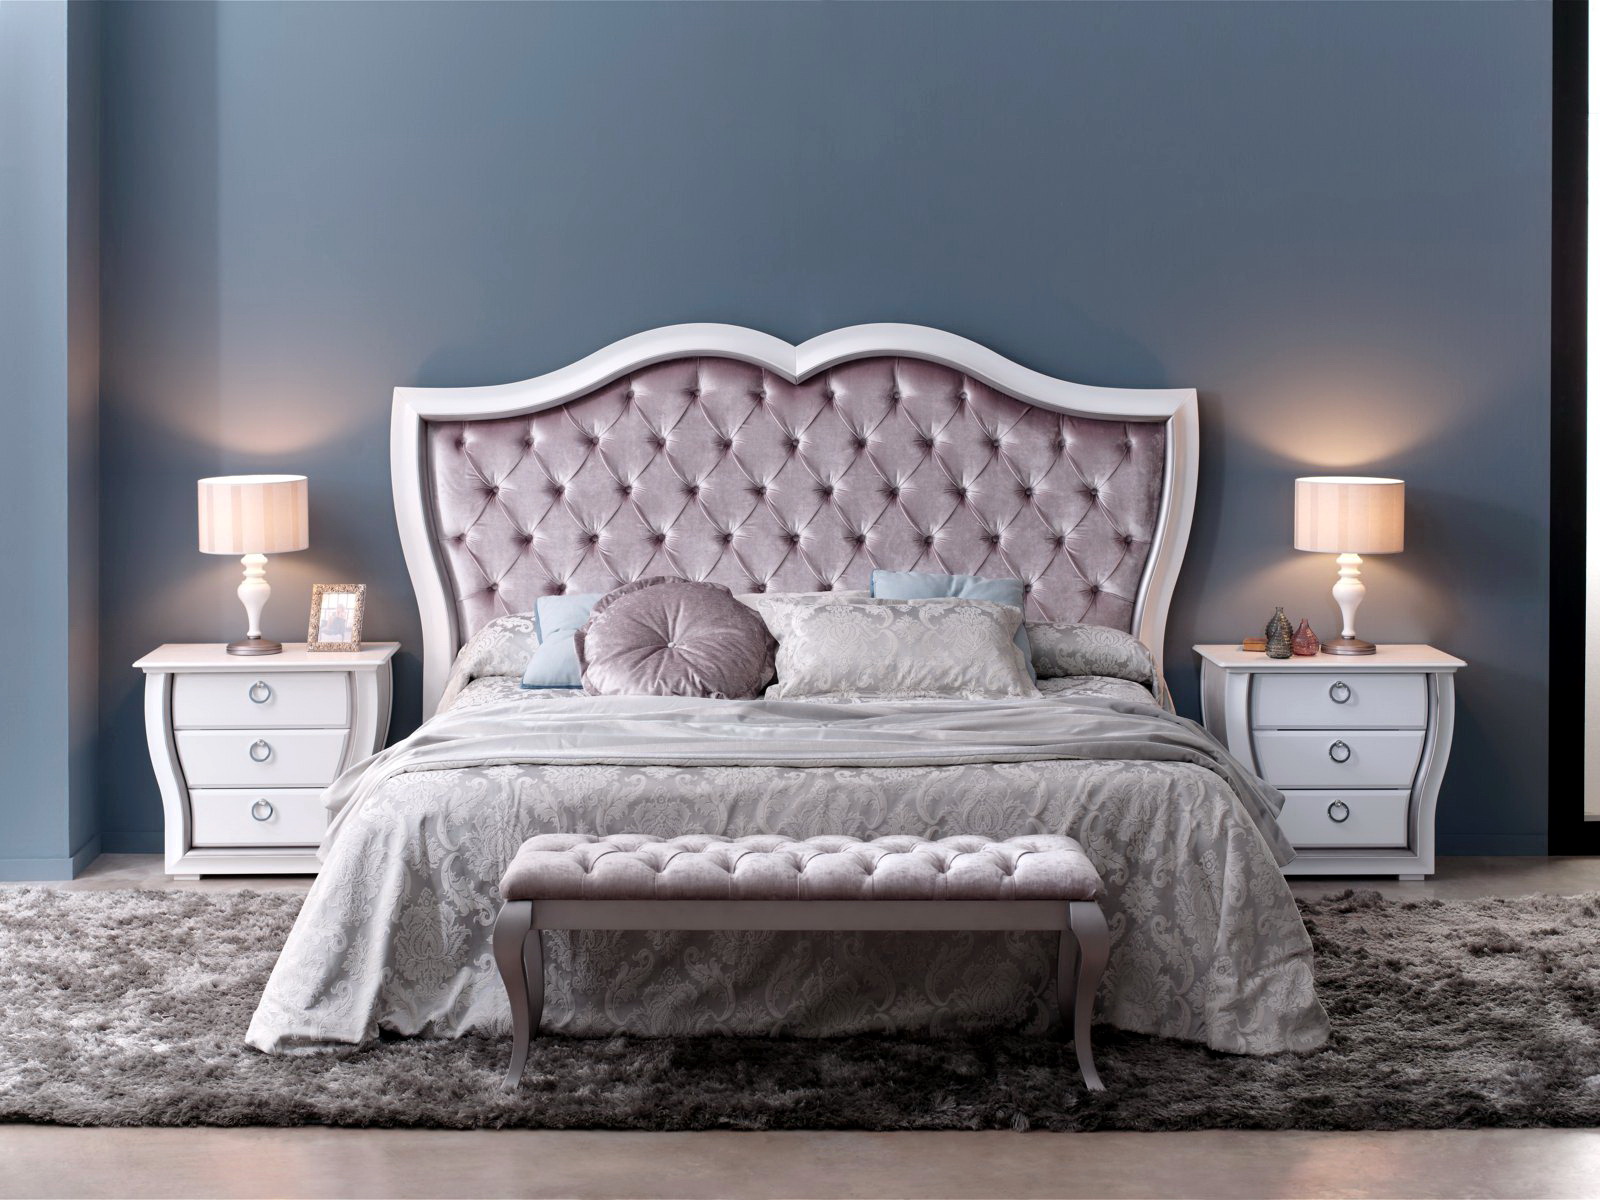 Dormitorio cama tapizada Zache 0018 by Zache Diseño Anzadi Mobiliario en muebles antoñán® León